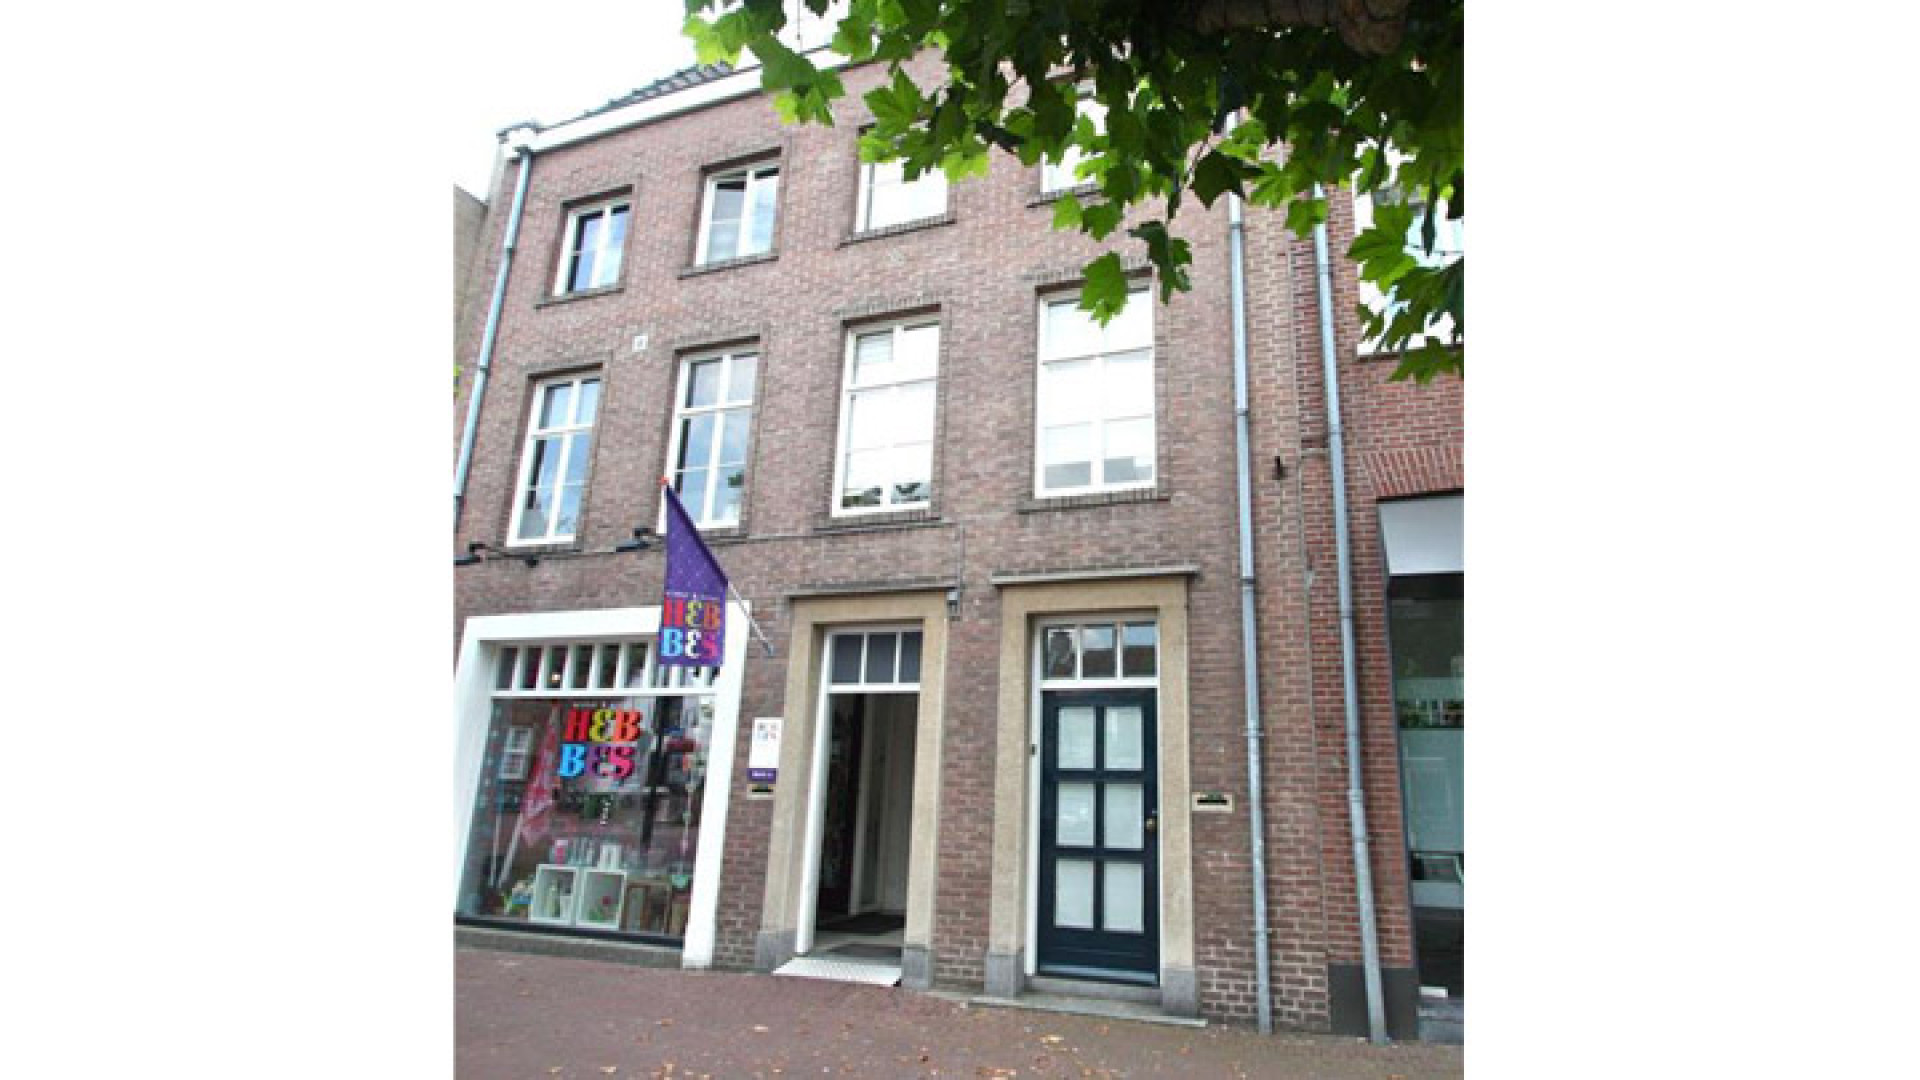 Huis Geert Hoes is verkocht en er komt geen veiling. Zie foto's 1